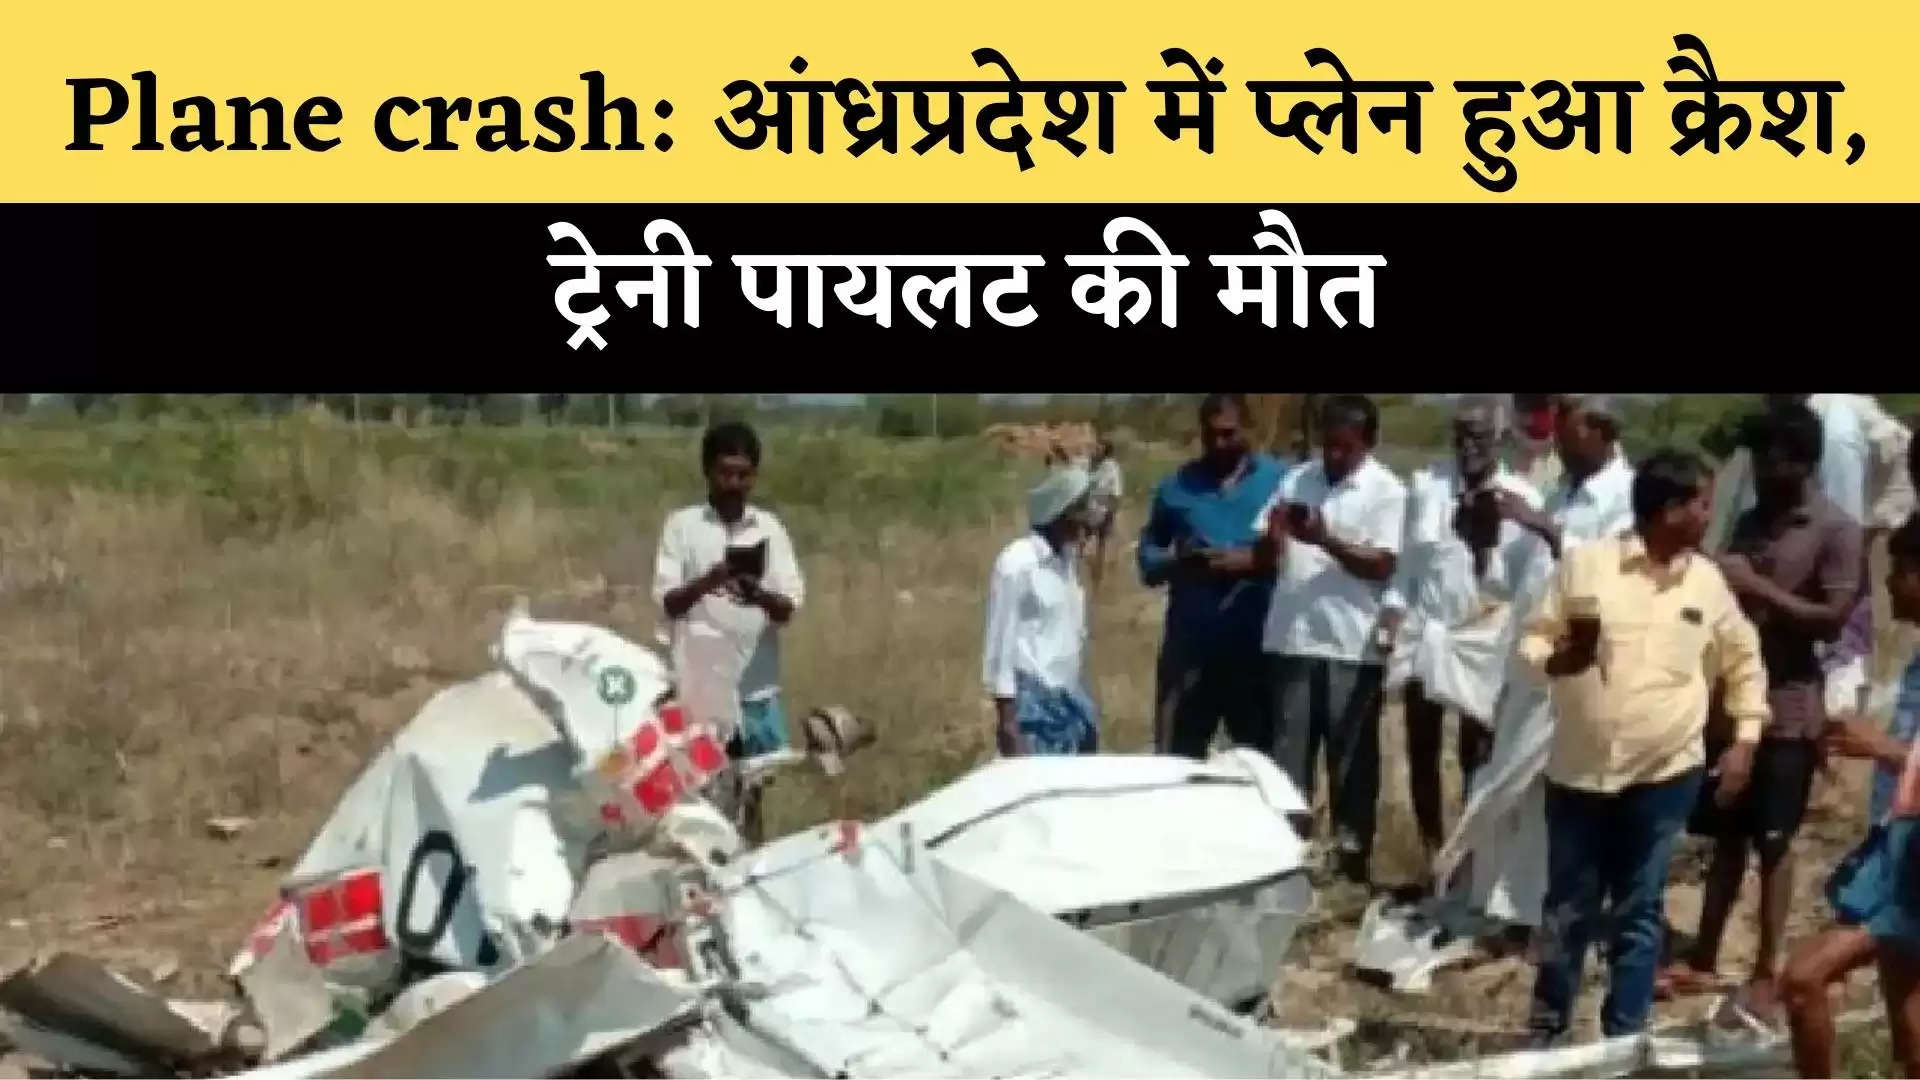 Plane crash: आंध्रप्रदेश में प्लेन हुआ क्रैश, ट्रेनी पायलट की मौत